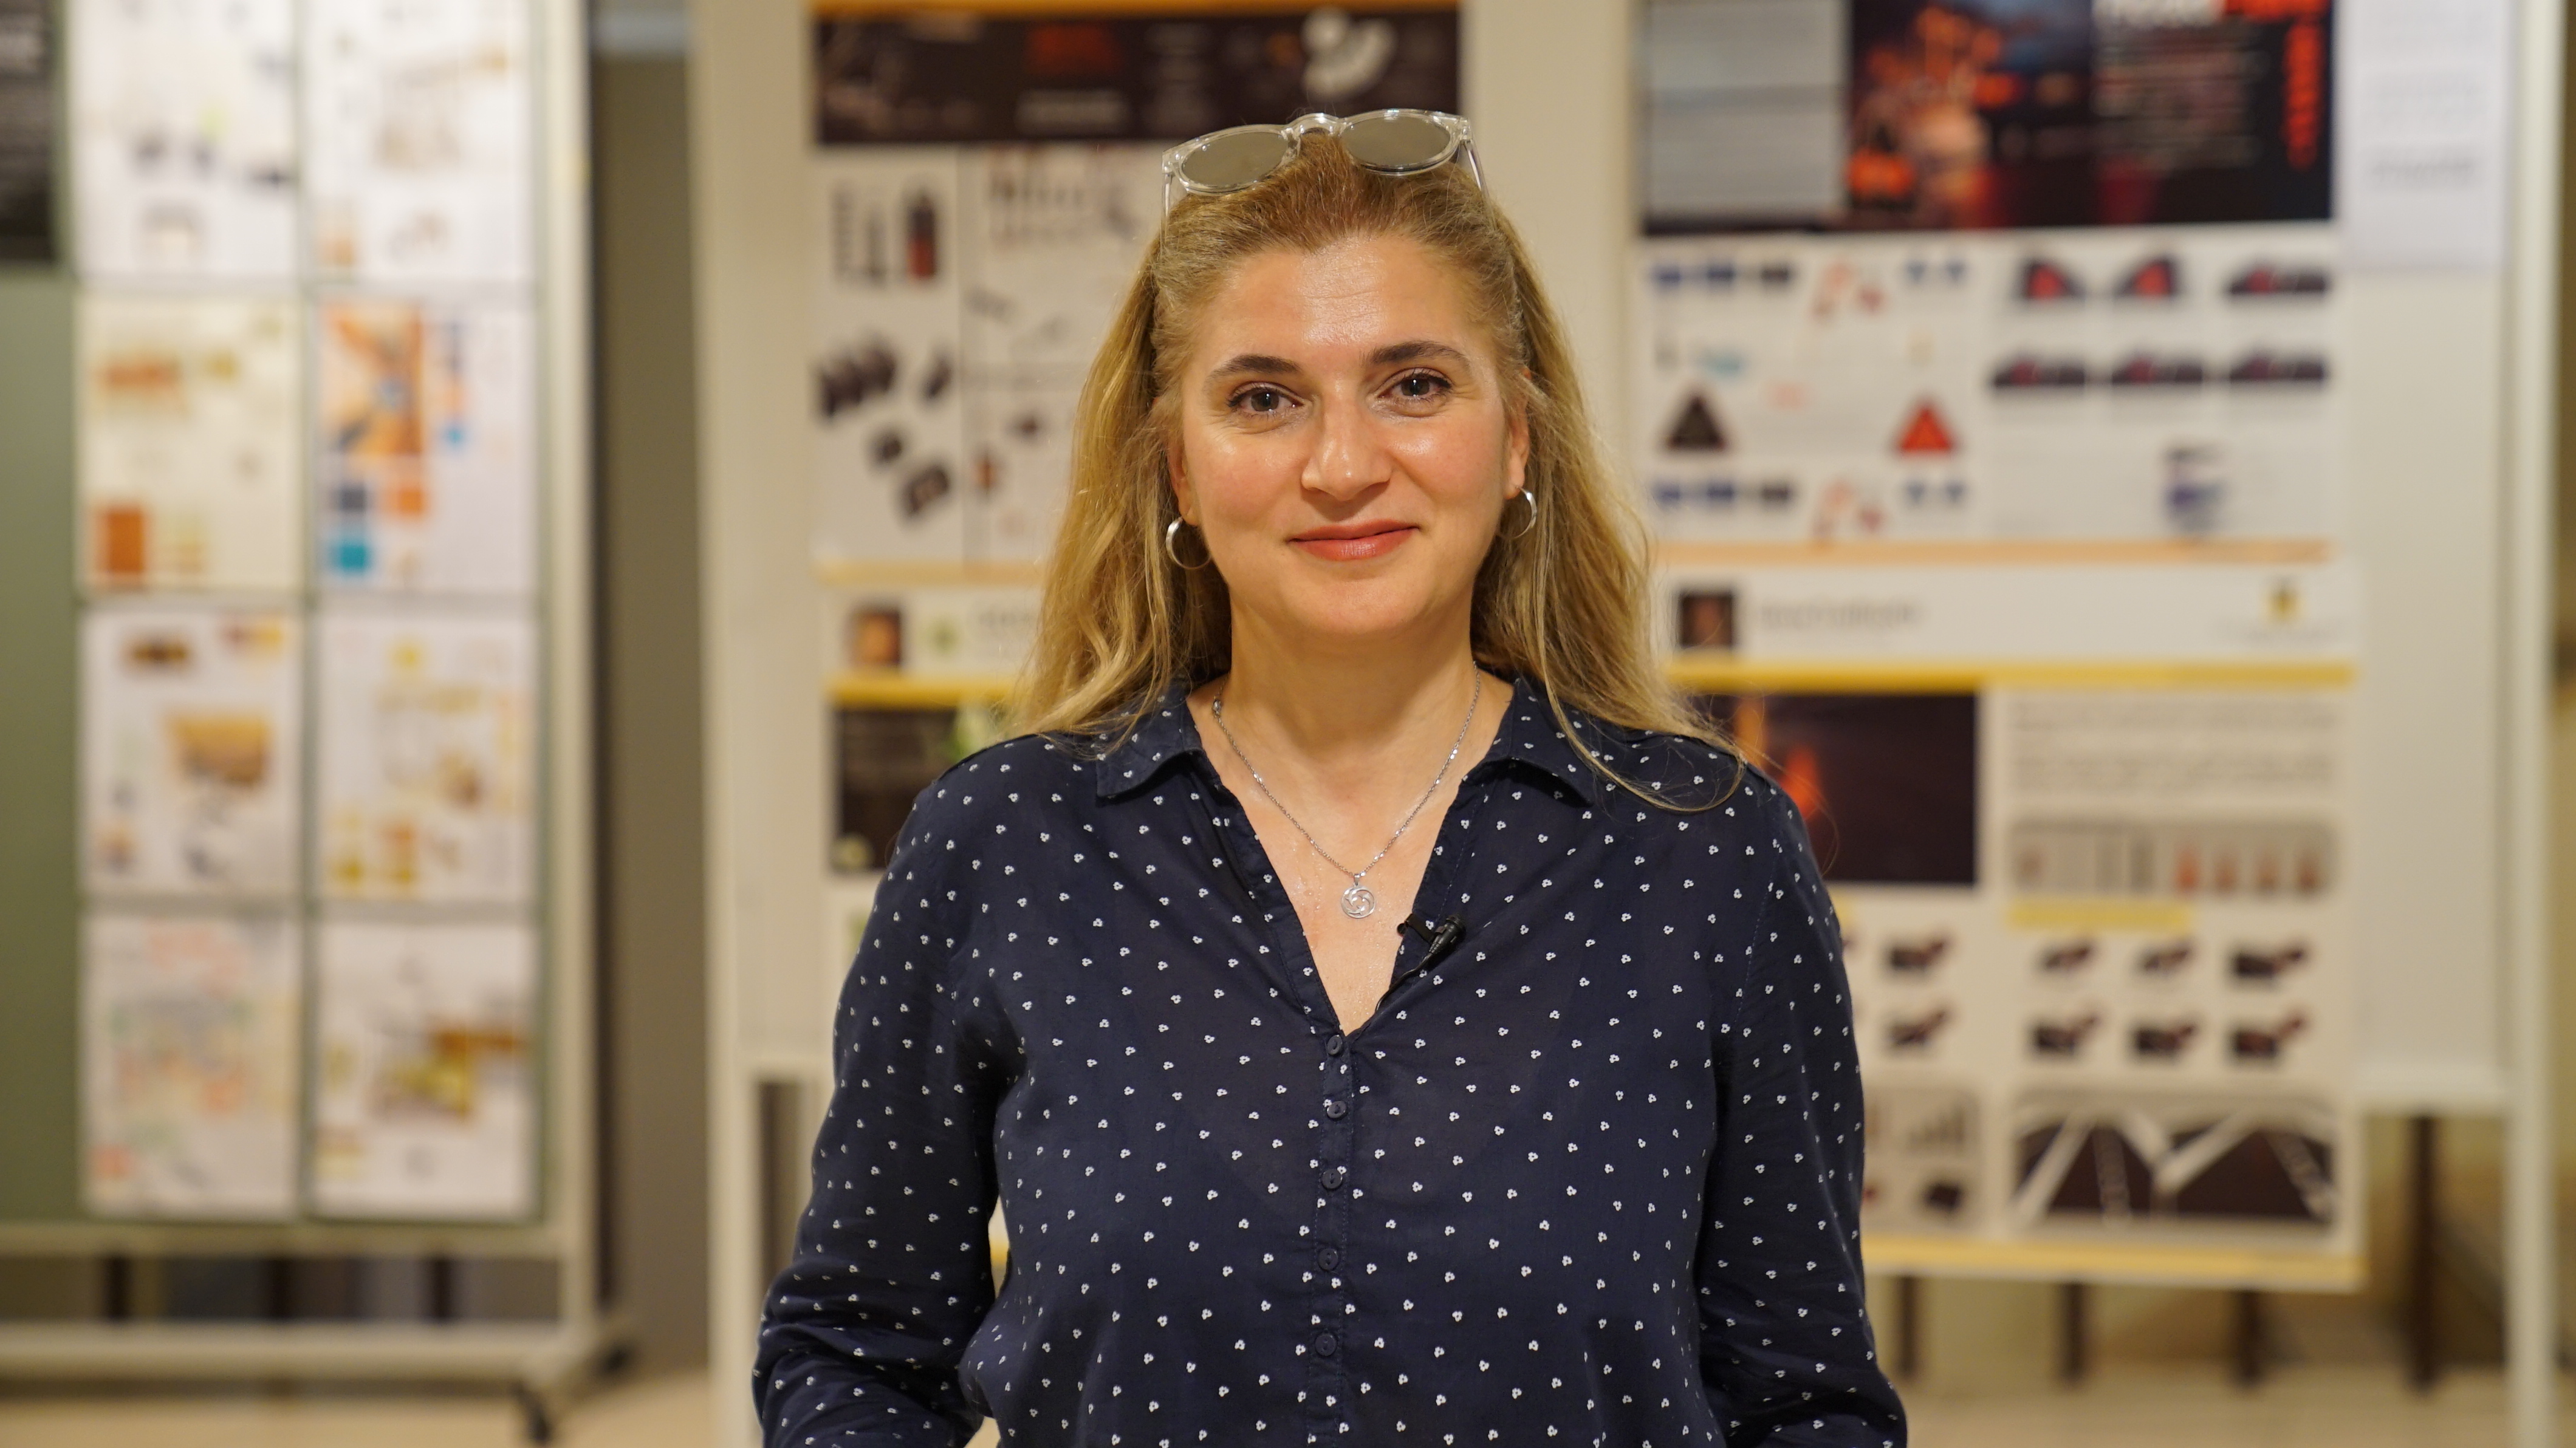 Endüstriyel Tasarım Bölüm Başkanımız Doç. Dr. Pınar Öztürk Demirtaş’a sorduk